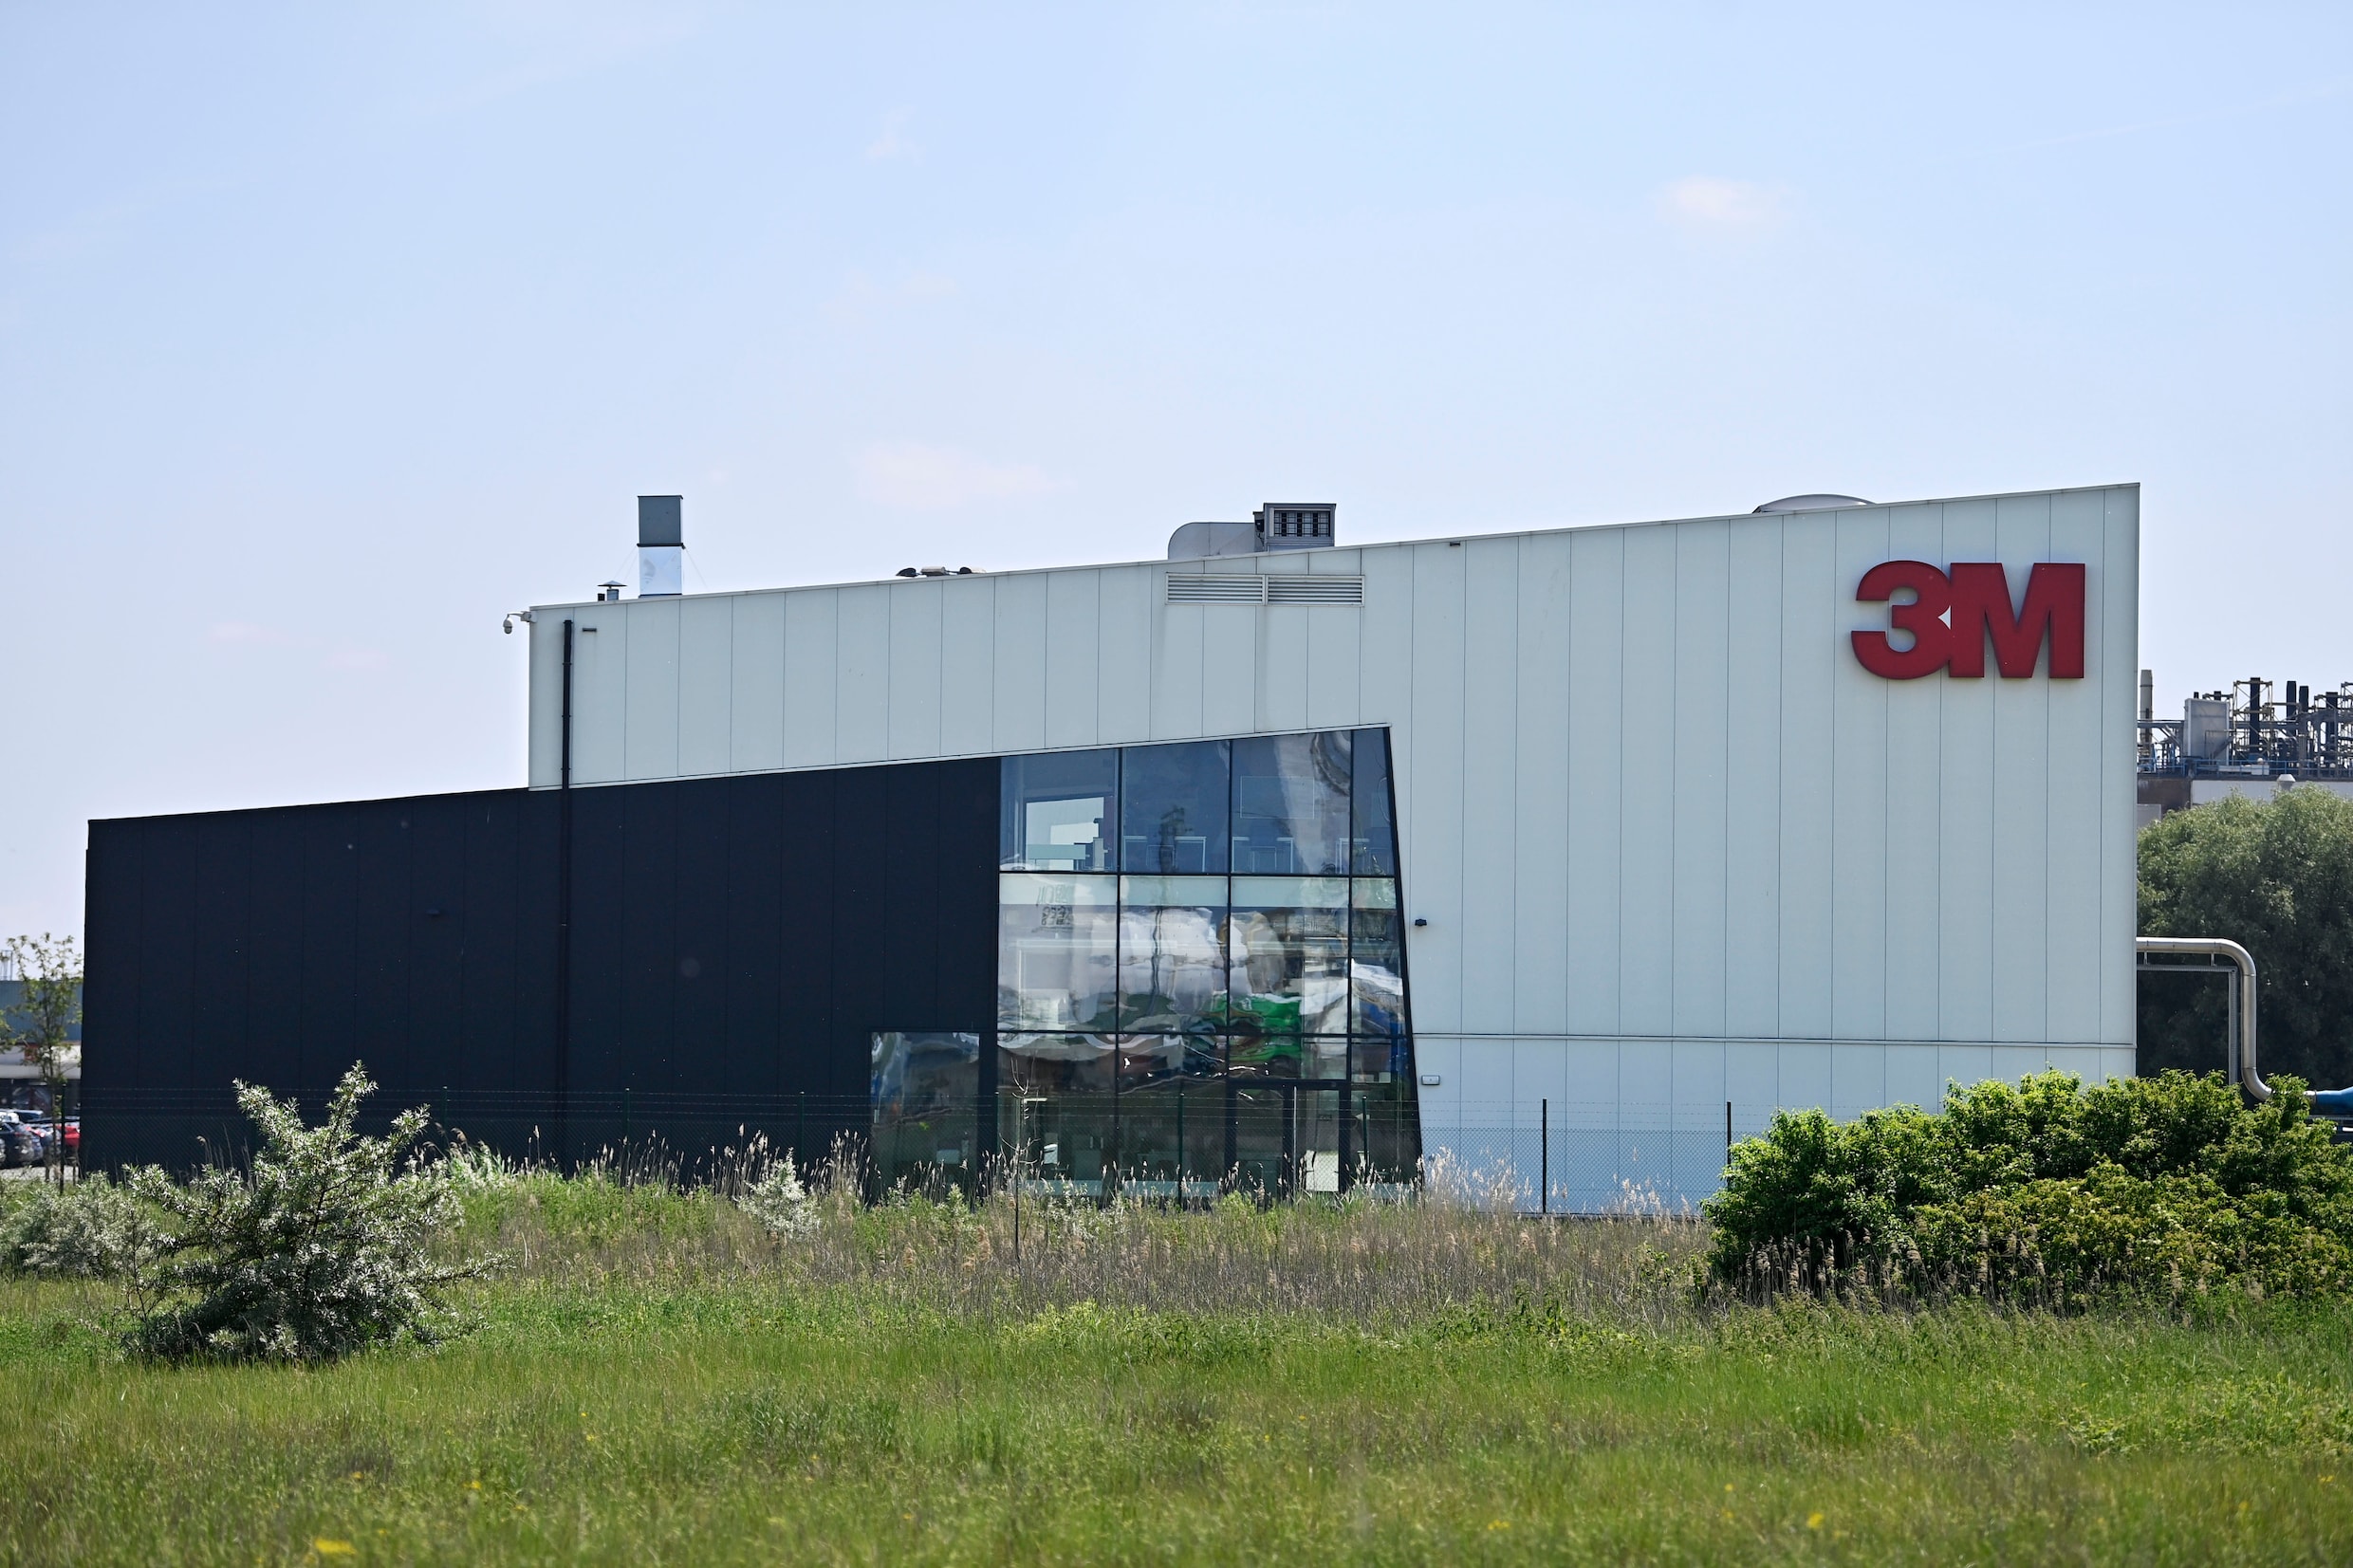 Vlaamse regering: ‘Eet geen eieren in straal van 5 kilometer rond 3M-fabriek in Zwijndrecht’